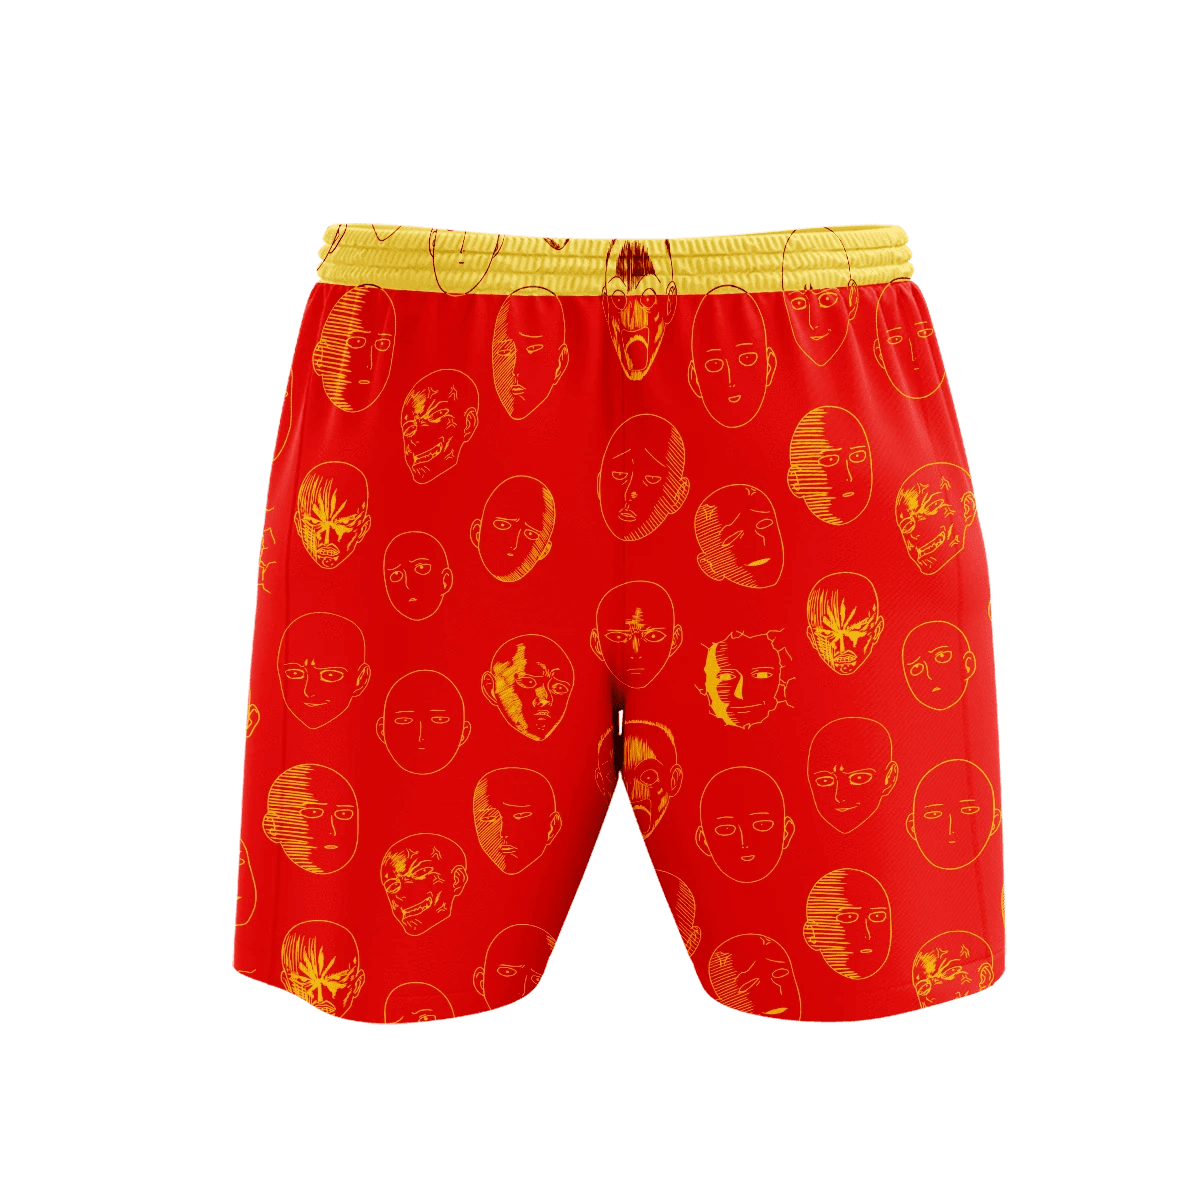 One Pump Man Beach Shorts